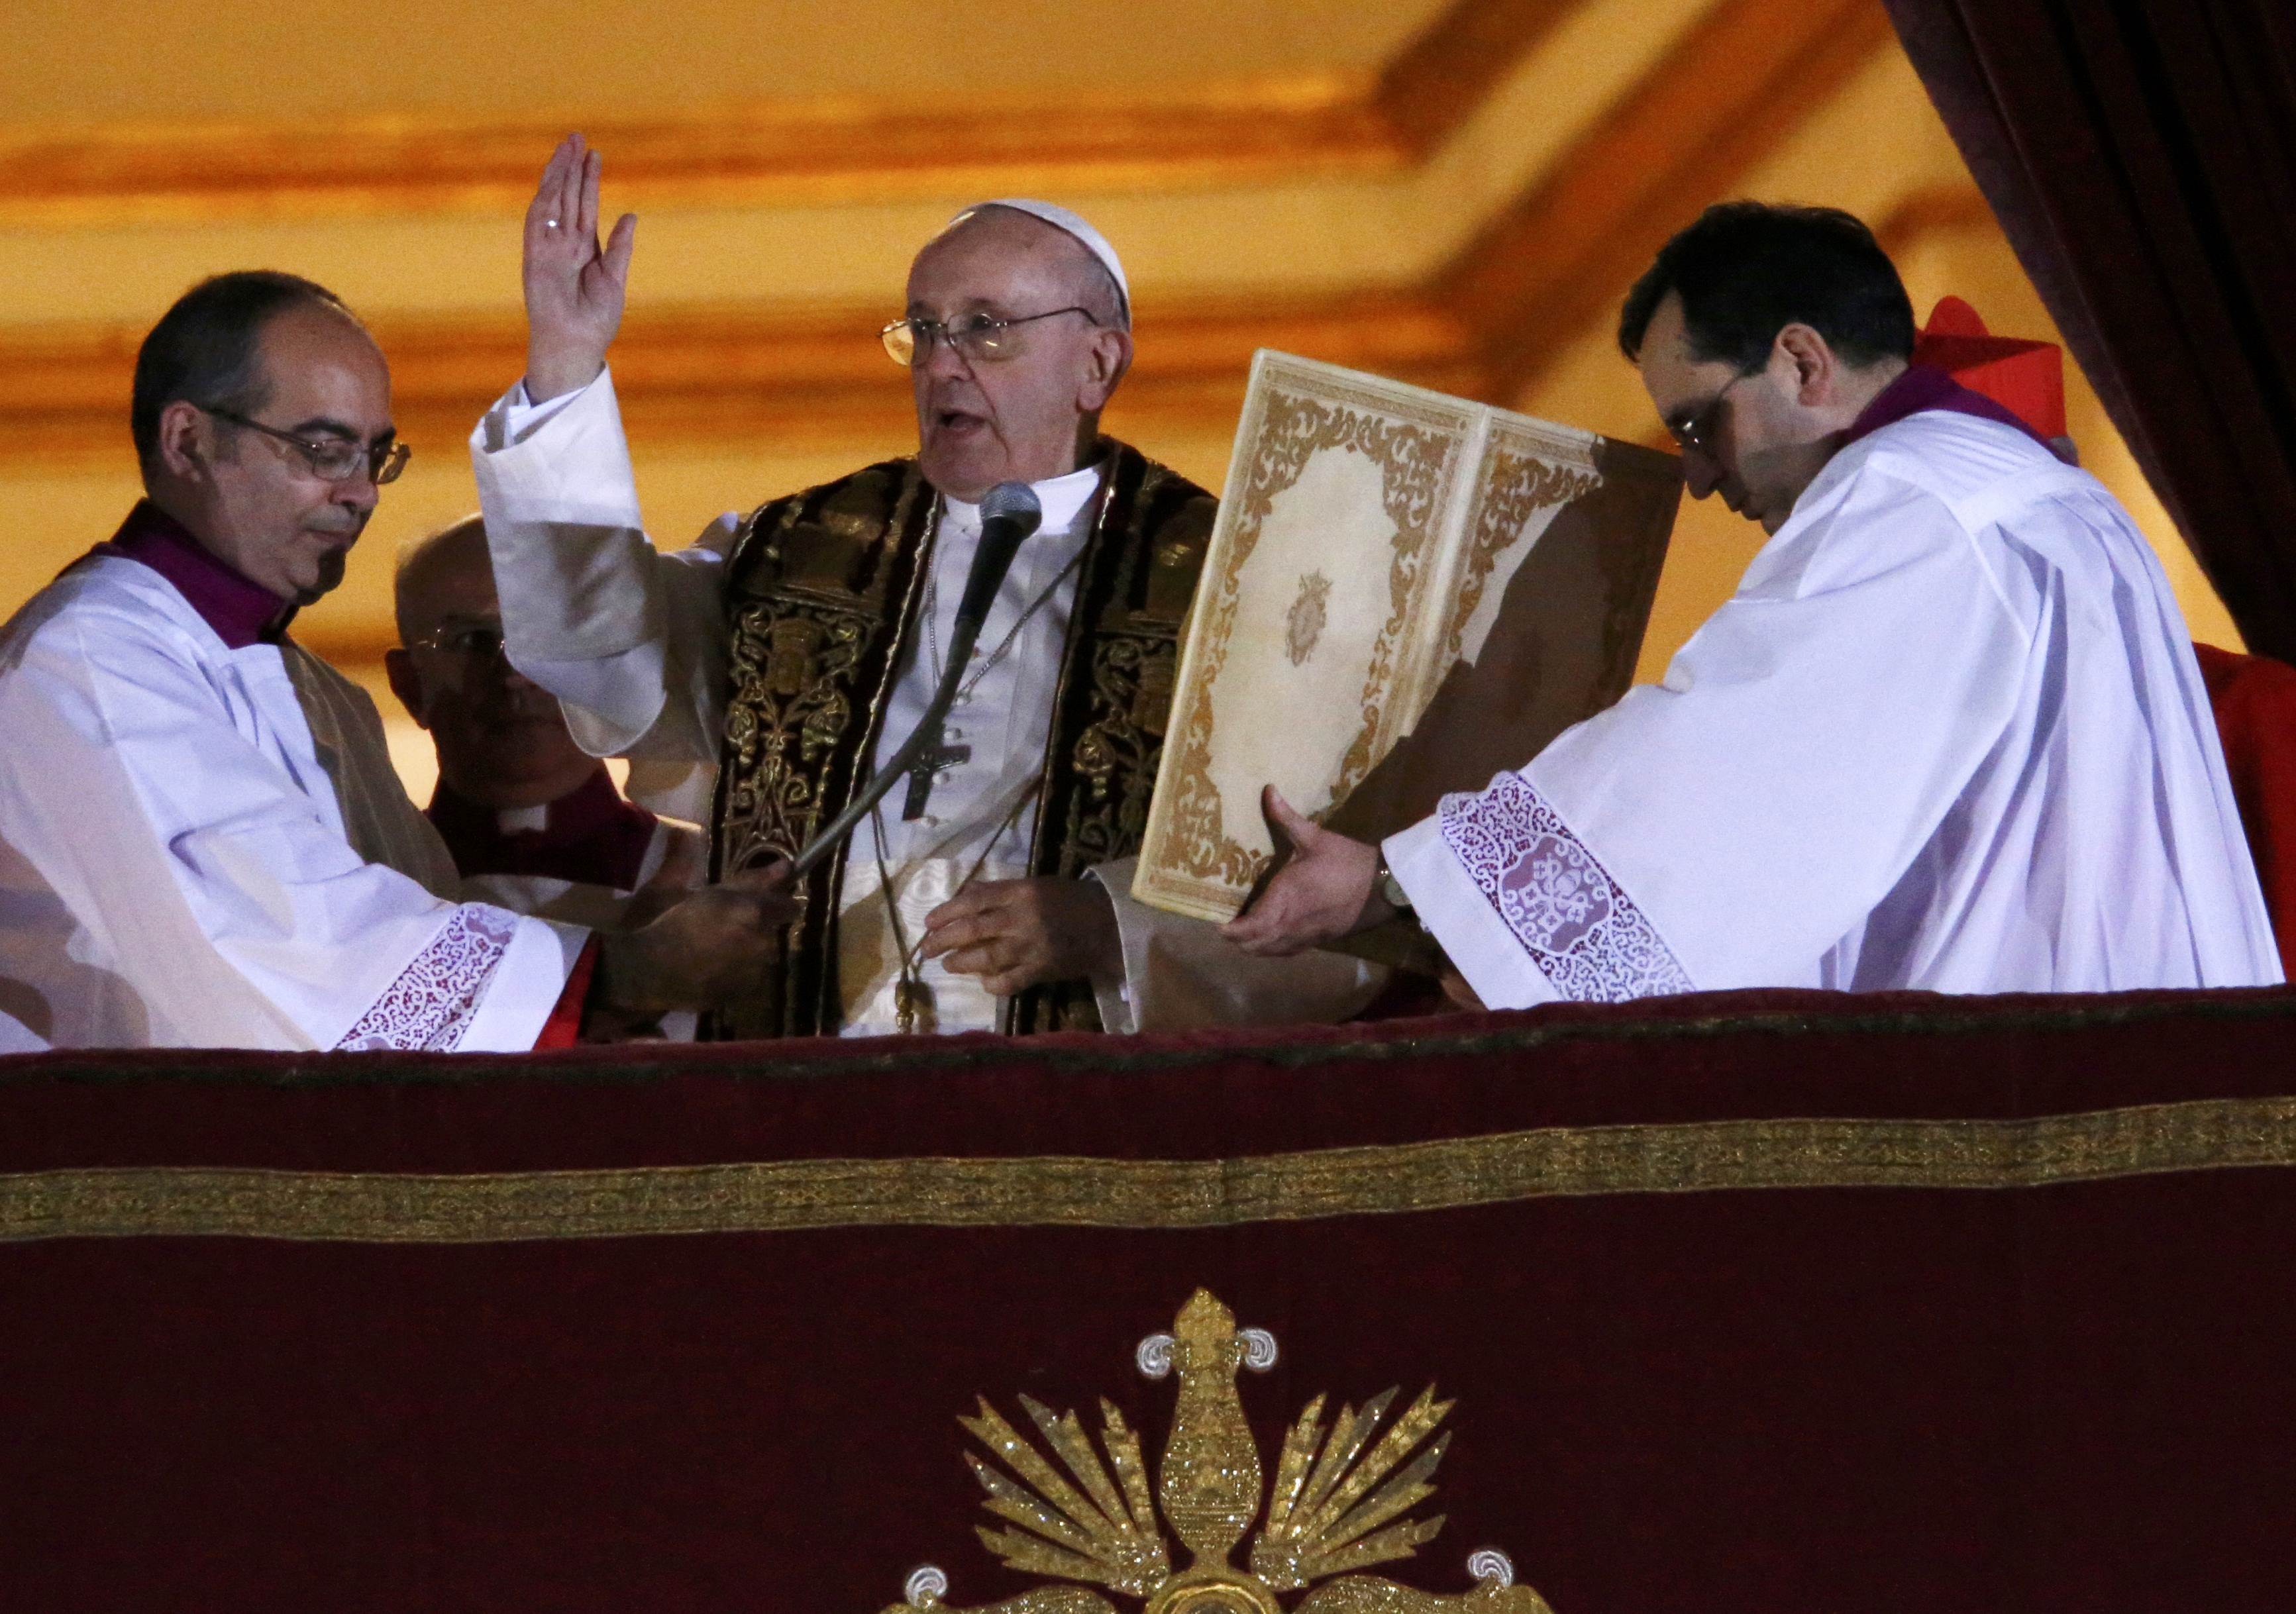 El “habemus papam” que subió al cardenal Bergoglio a la silla de Pedro